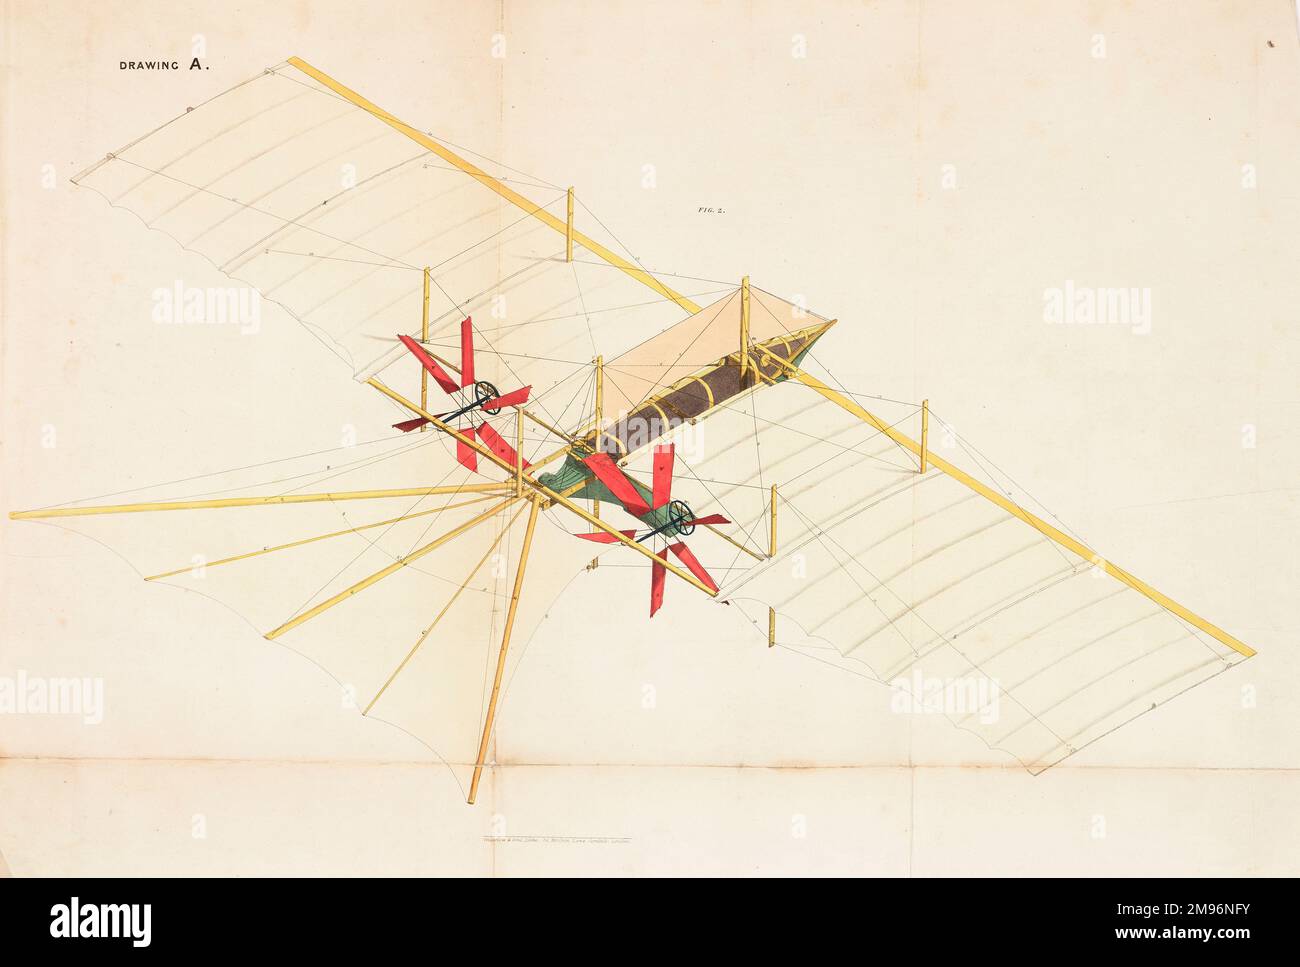 Der Luftdampfwagen -- Ansicht mit bedecktem Stoff. Diese Flugmaschine wurde 1842 von William Samuel Henson (1812-1888) und John Stringfellow (1799-1883) patentiert. Stockfoto